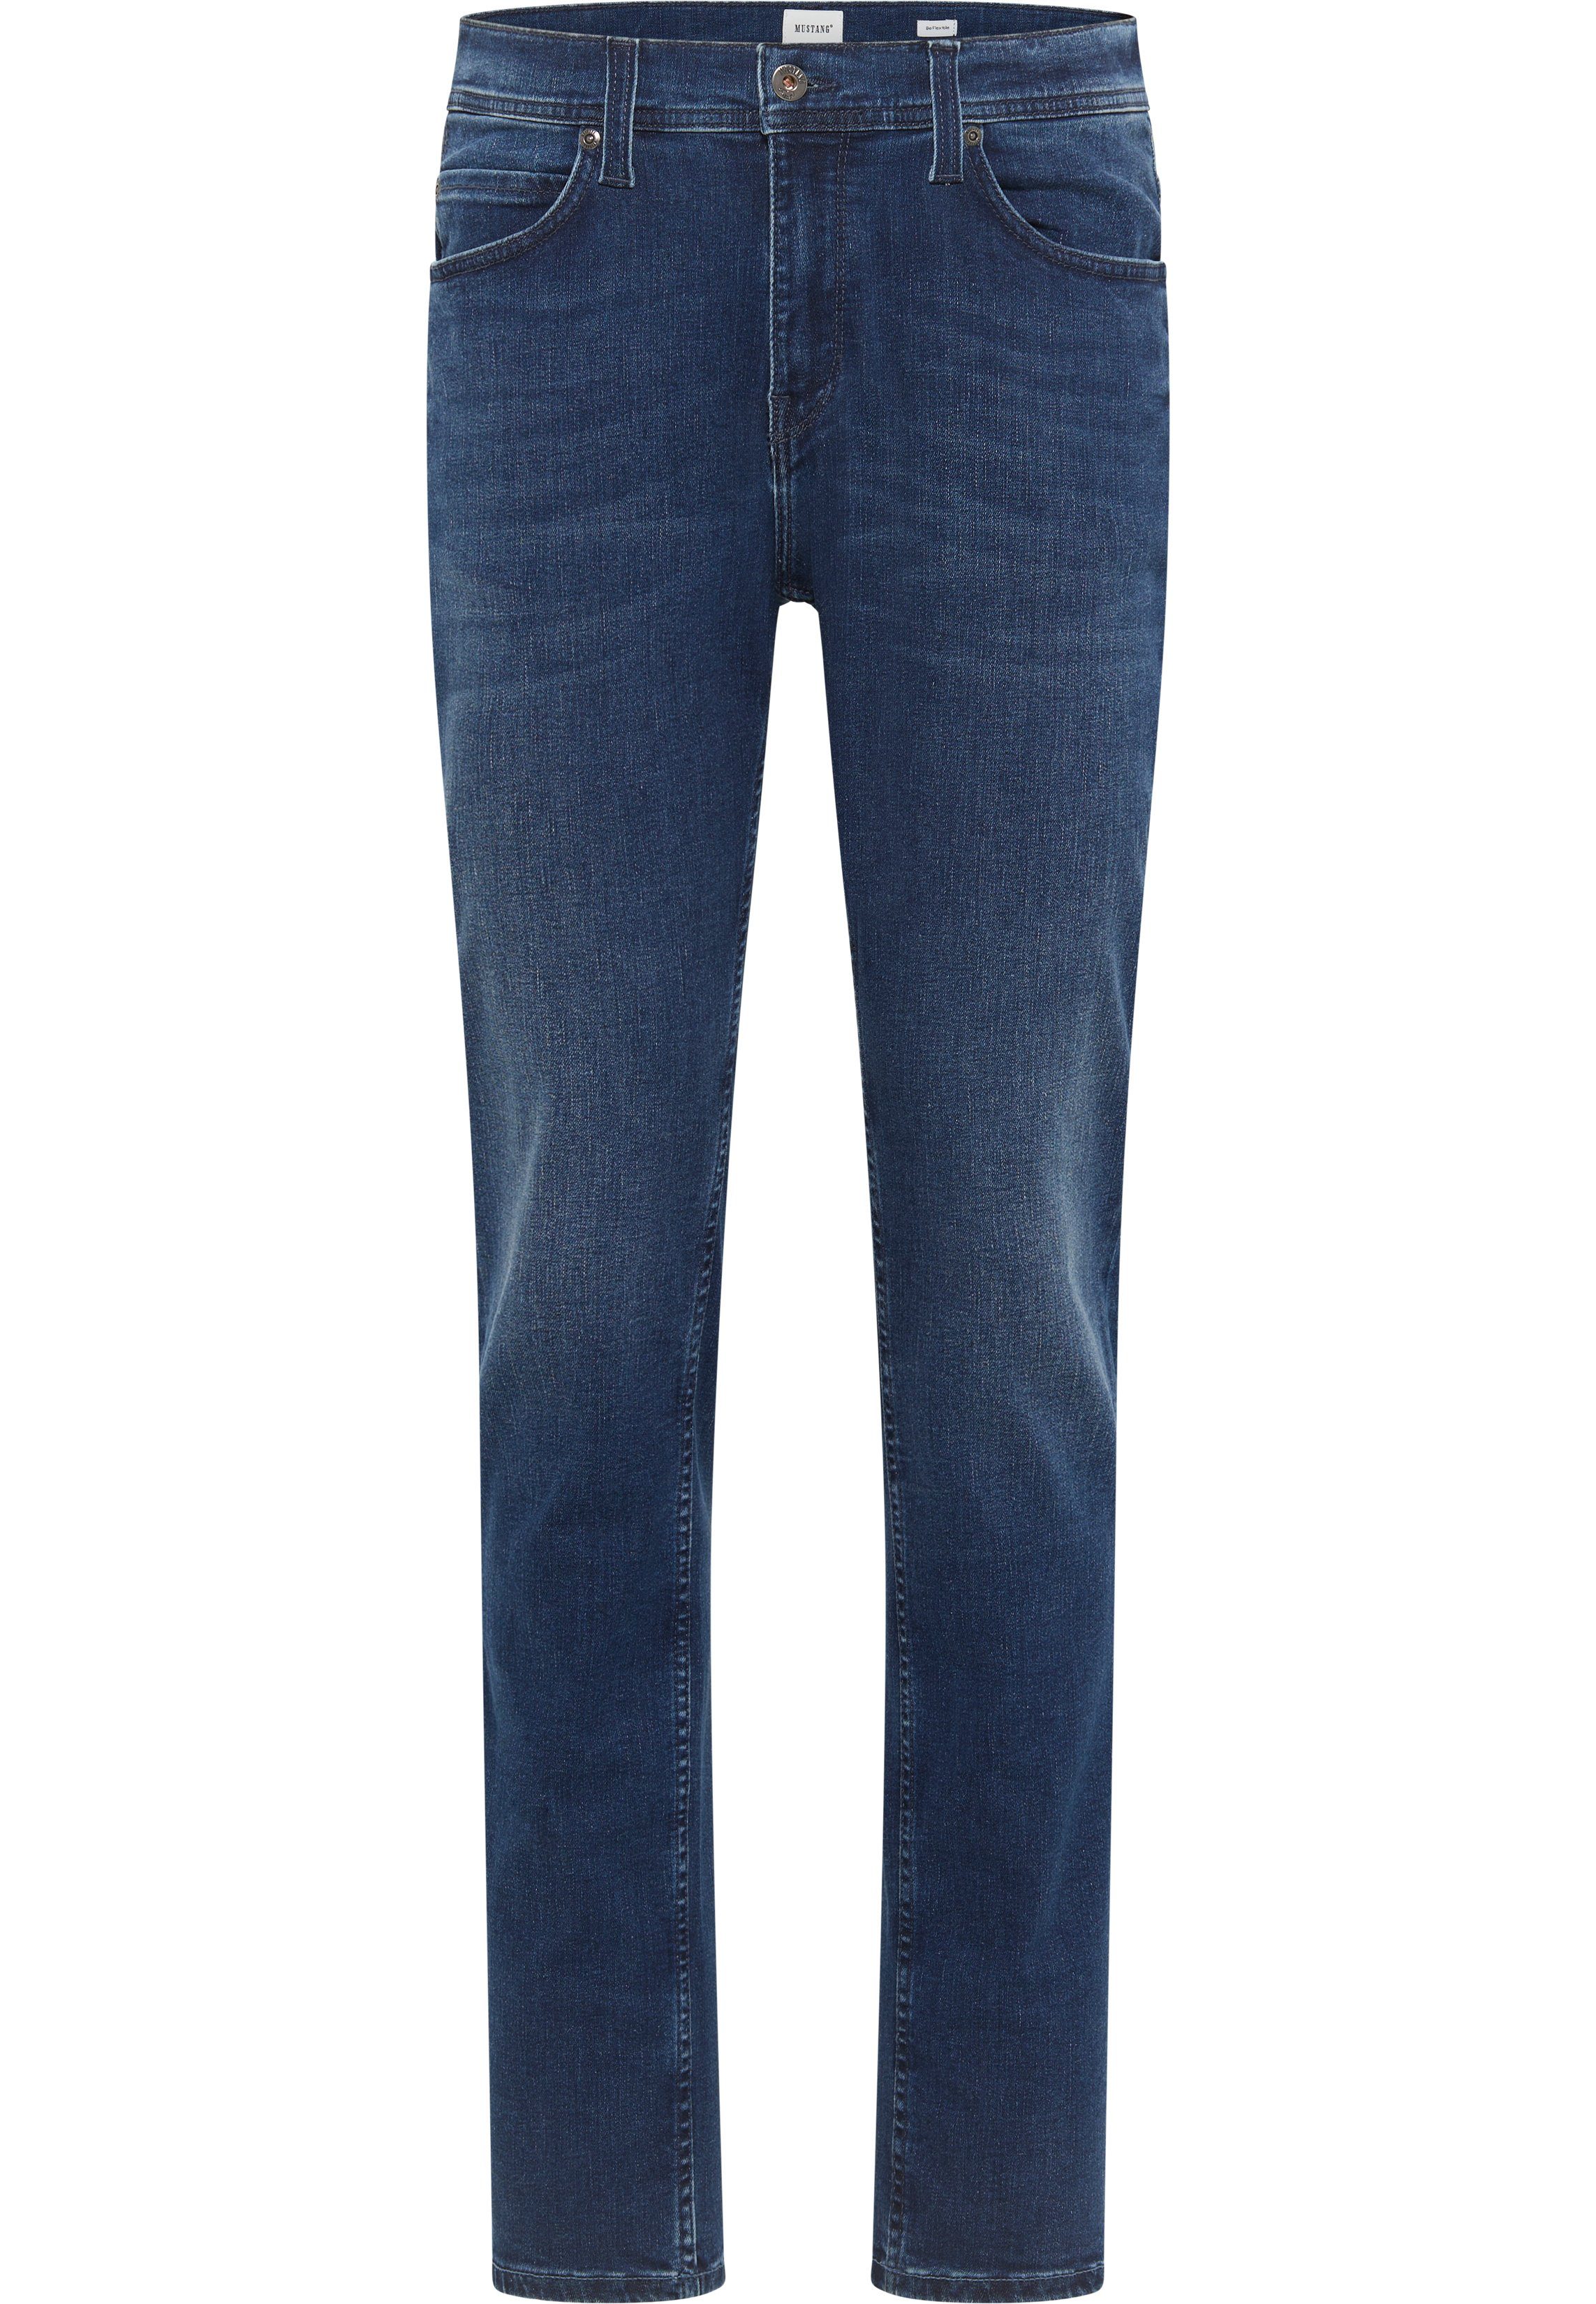 MUSTANG Slim-fit-Jeans Style Vegas blau-5000882